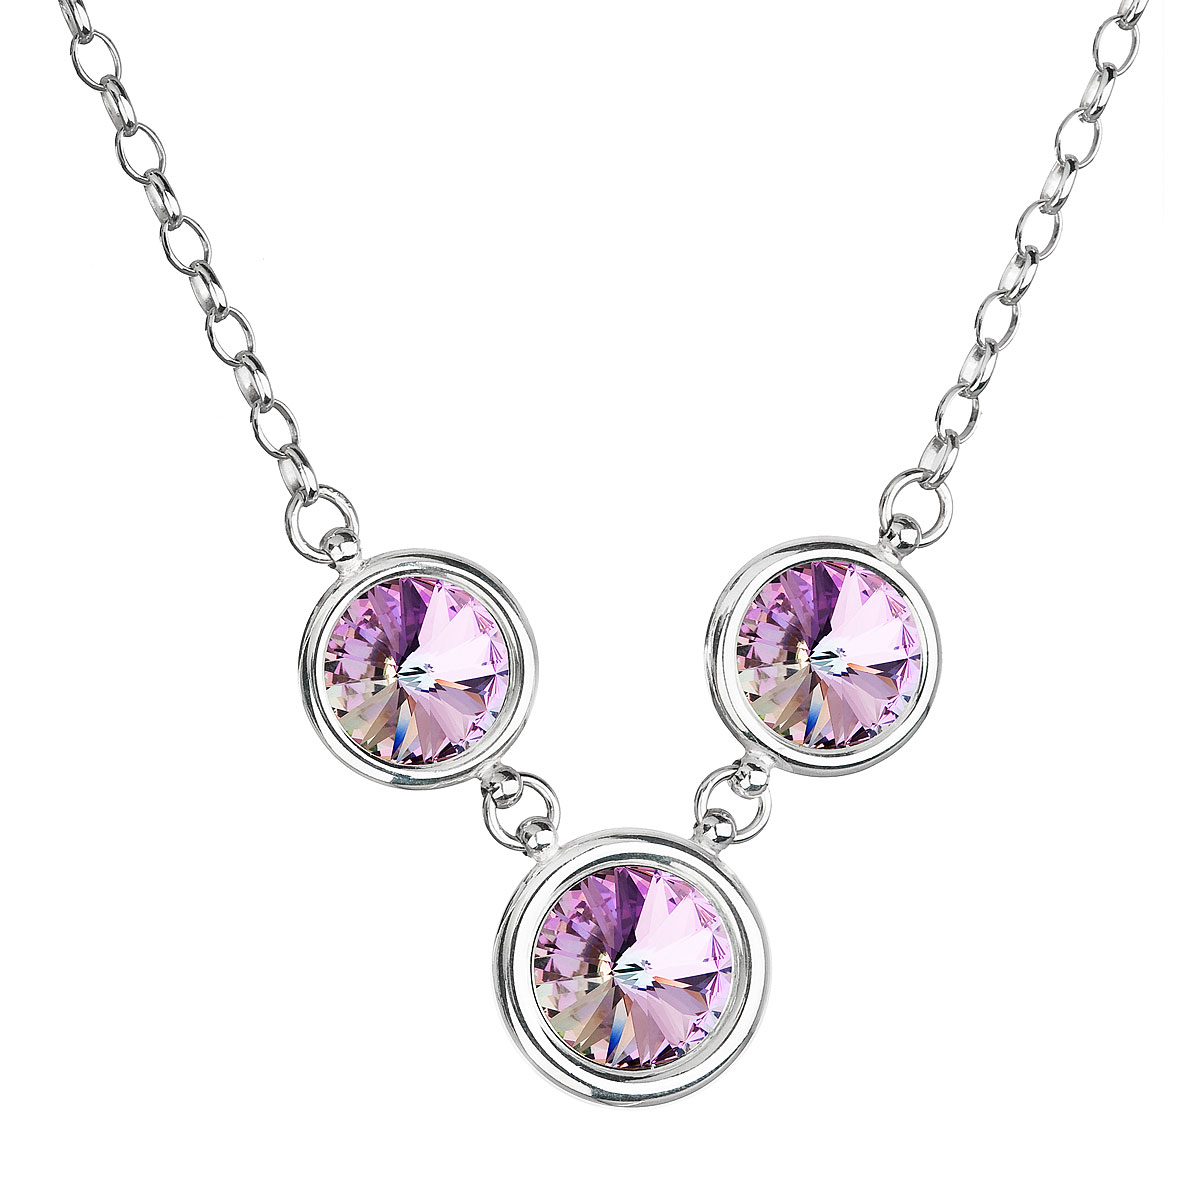 Evolution Group Stříbrný náhrdelník se Swarovski krystaly fialový kulatý 32033.5 vitrail light